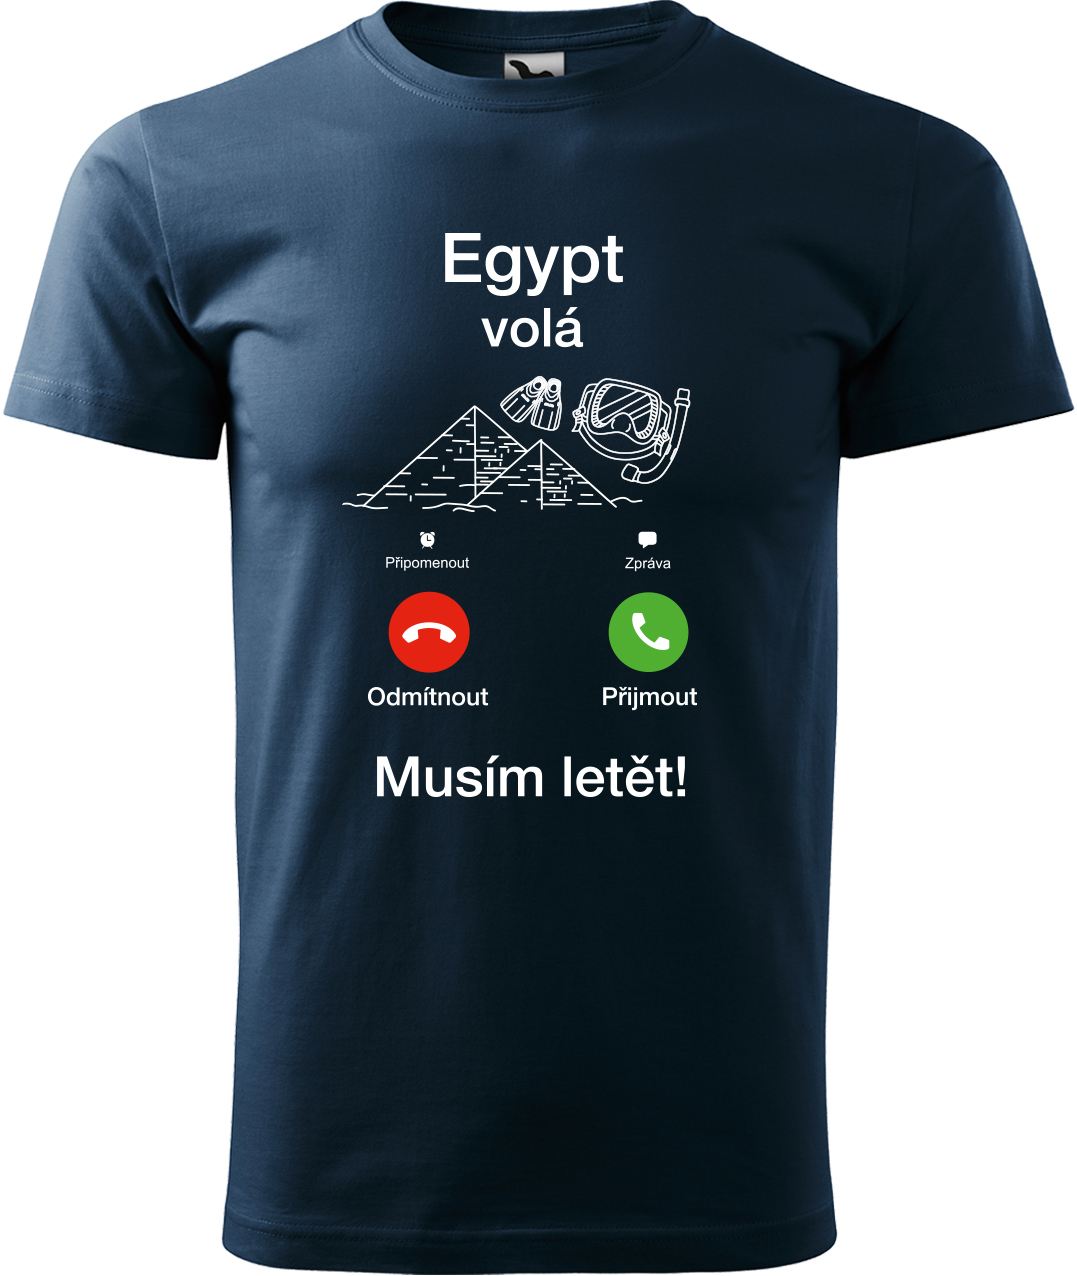 Pánské cestovatelské tričko - Egypt volá - musím letět! Velikost: M, Barva: Námořní modrá (02), Střih: pánský